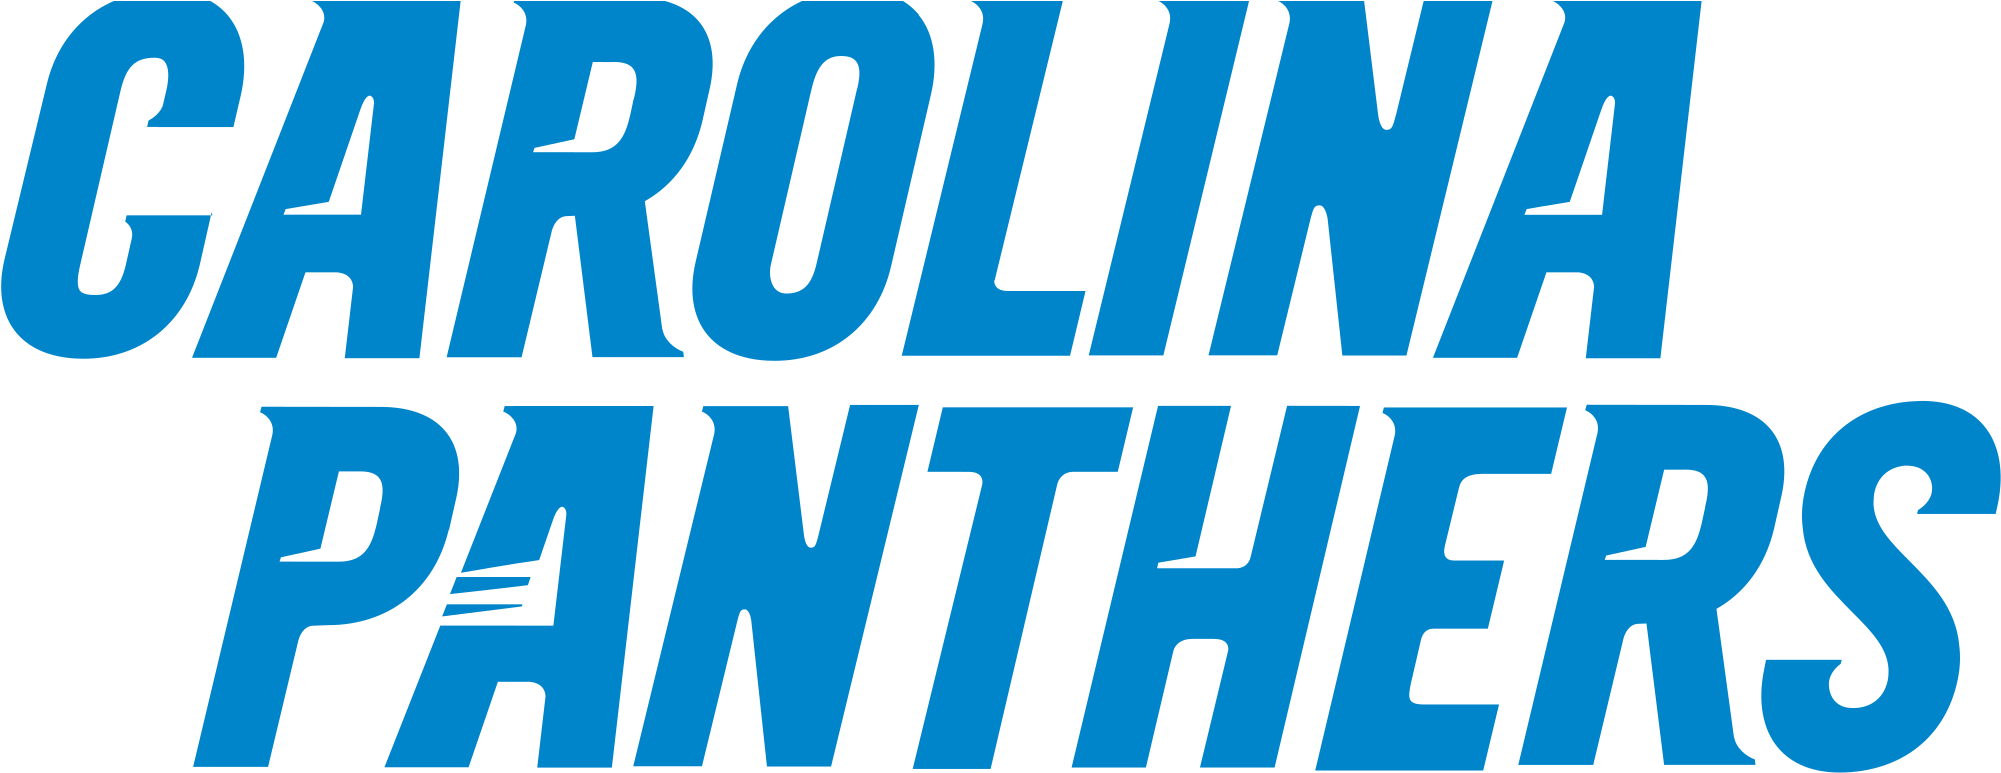 2px Carolina Panthers Wordmark Svg 15 - Carolina Panthers Logo (2000x779)